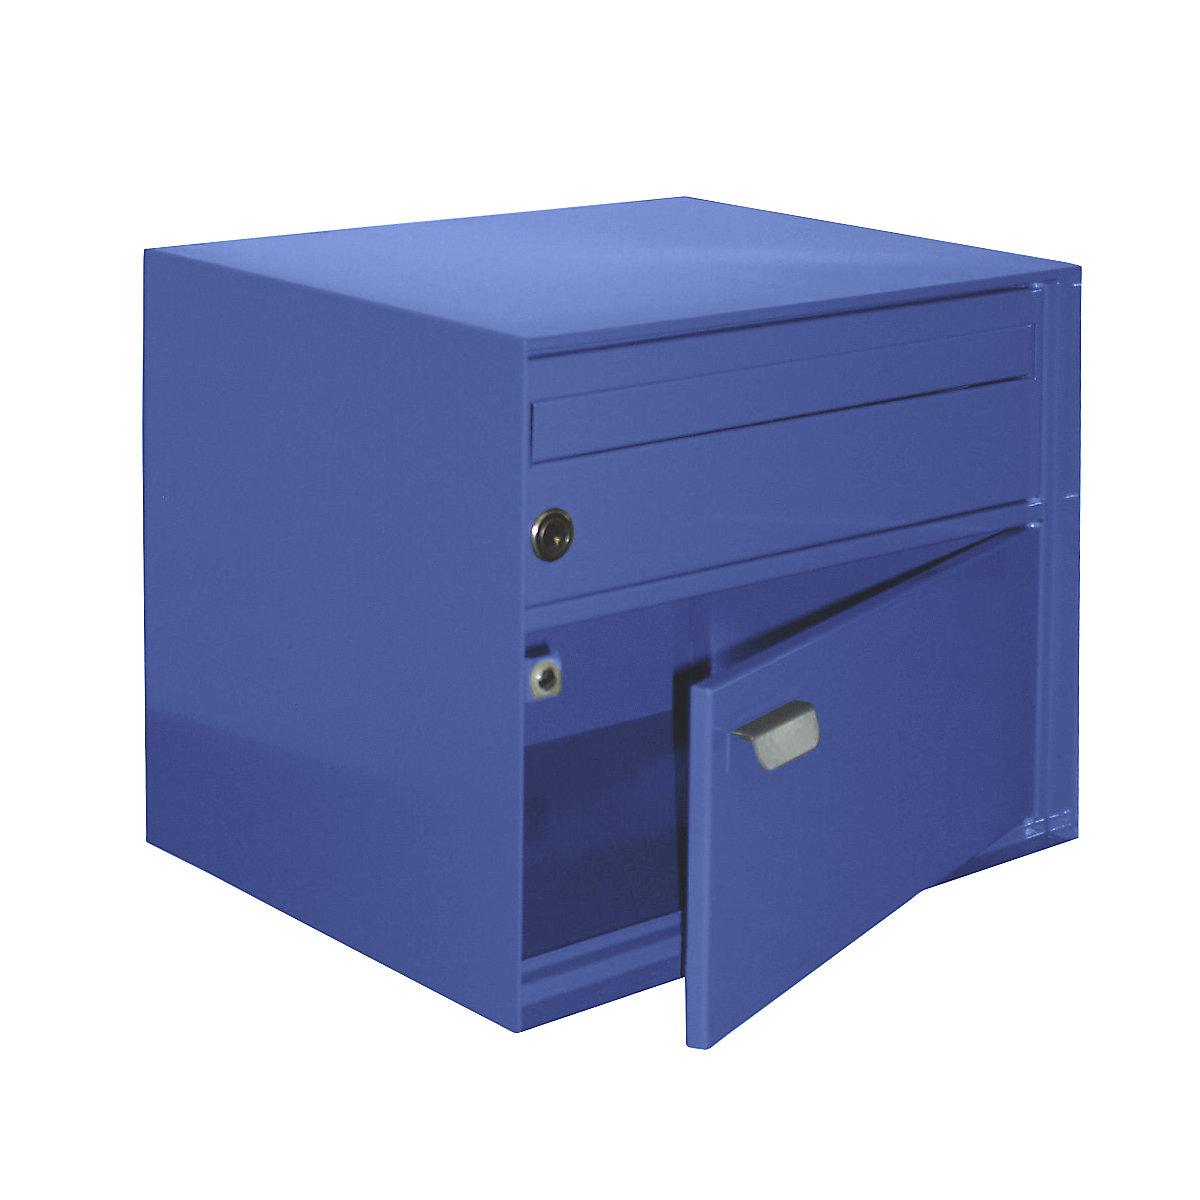 Briefkasten, BxHxT 390 x 315 x 310 mm, Stahlblech, pulverbeschichtet, signalblau-2